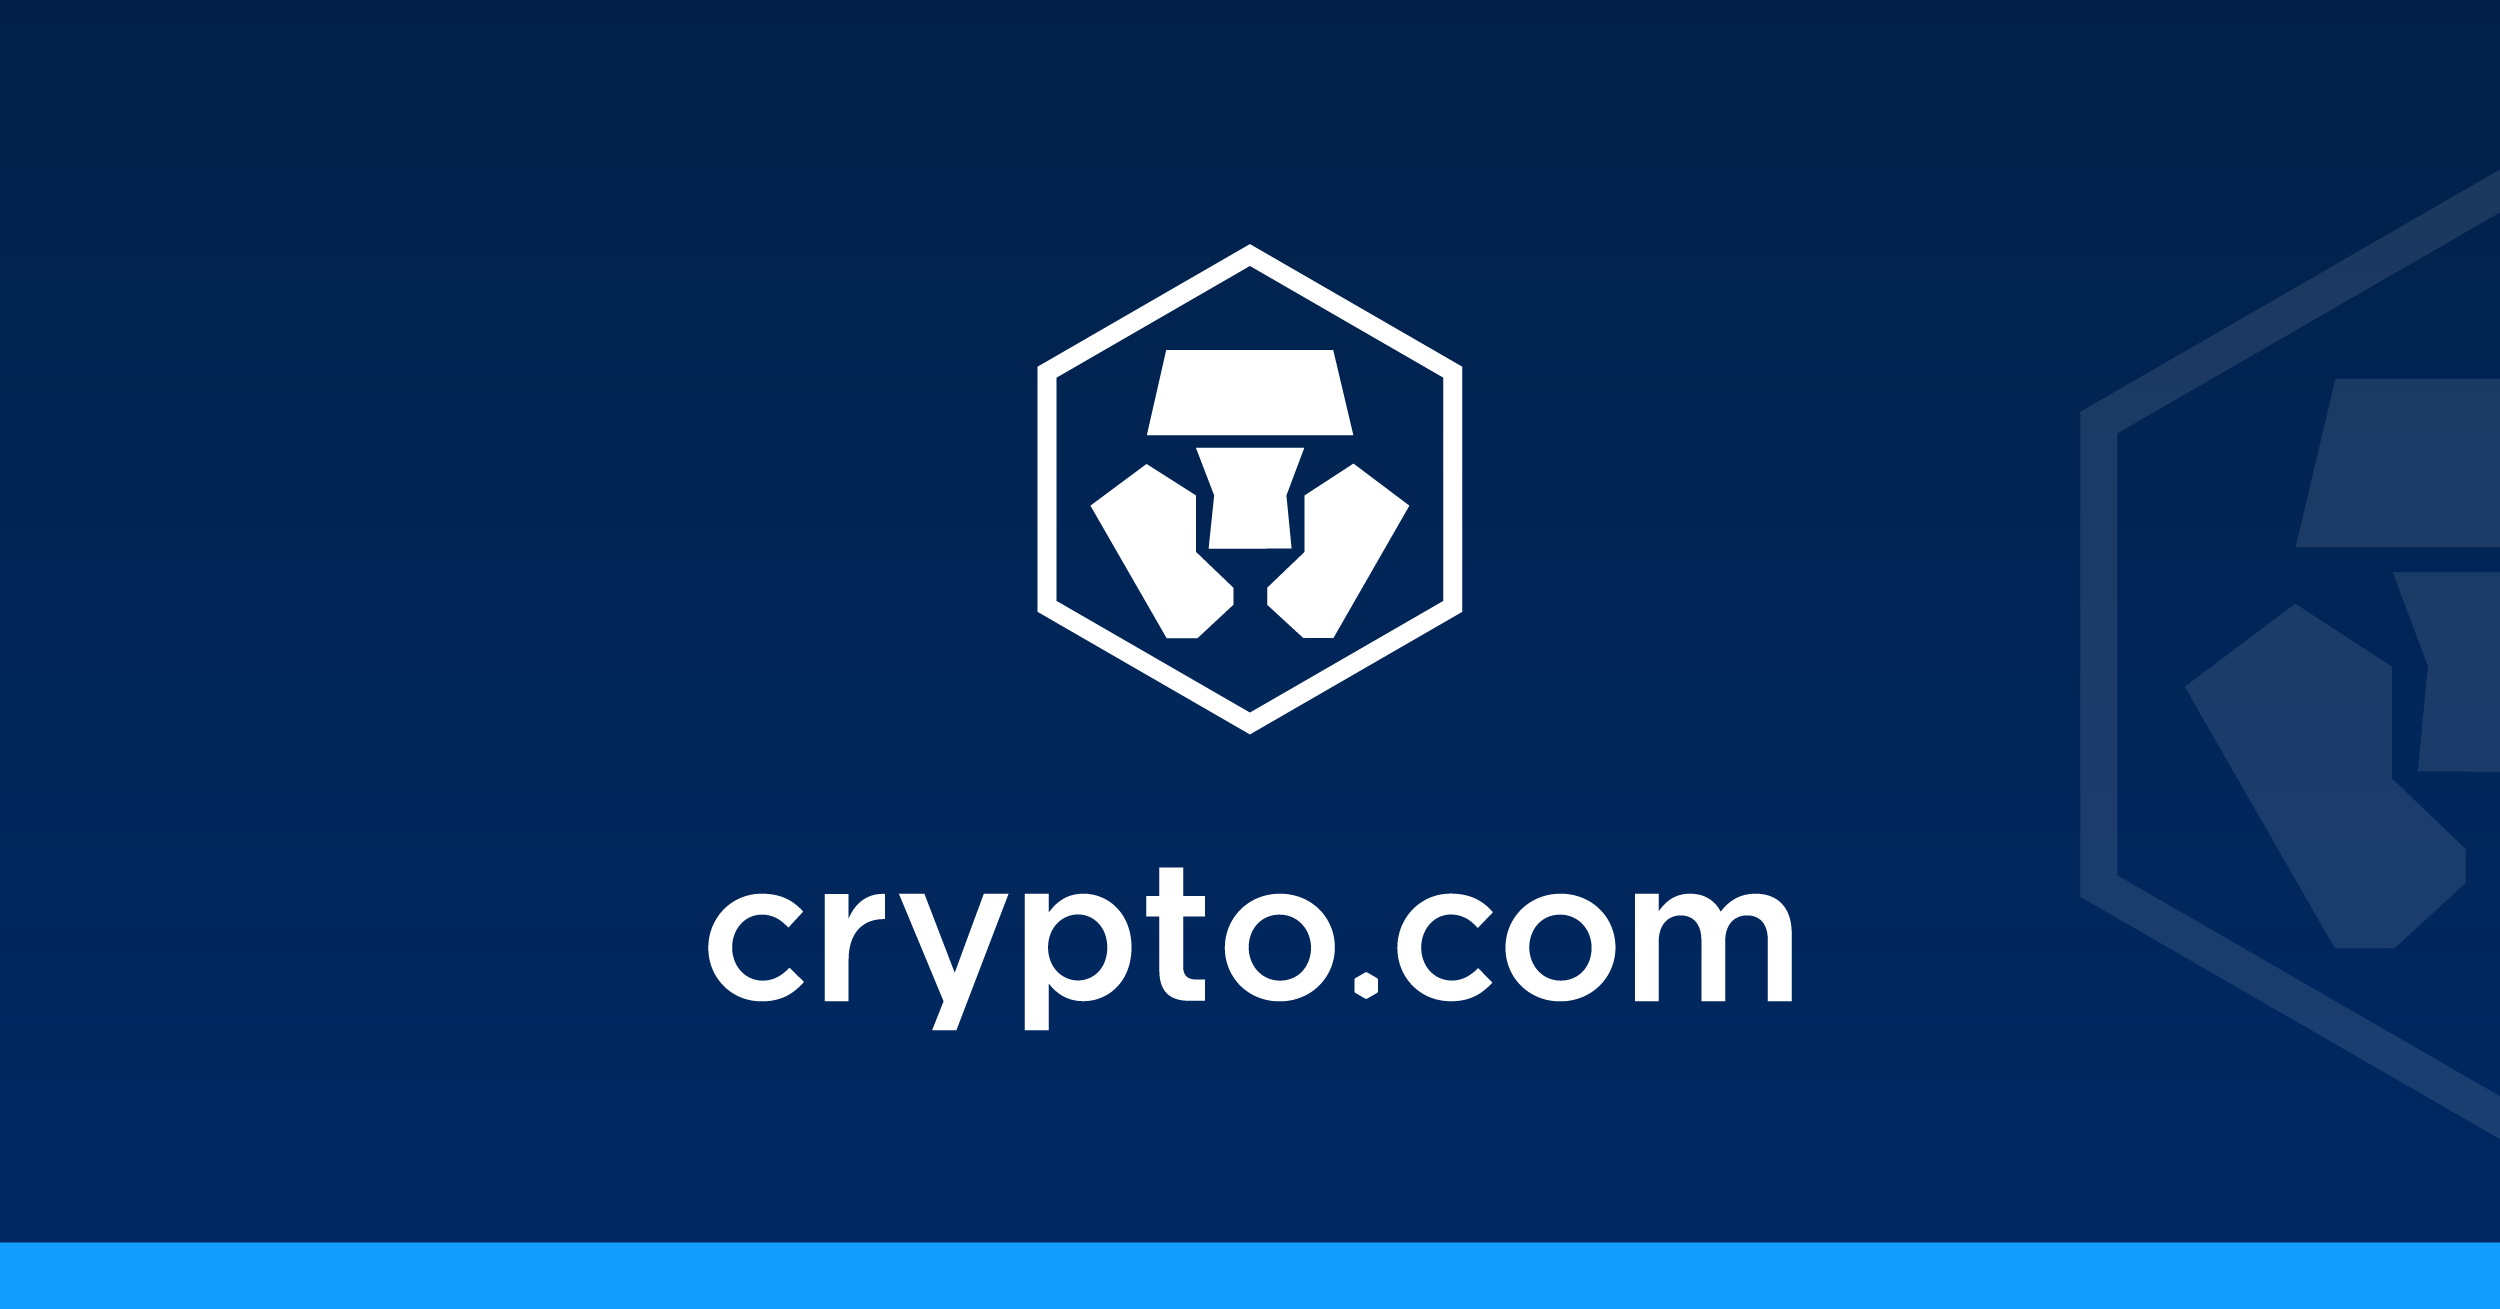 A banner introducing Crypto.com Coin (CRO)